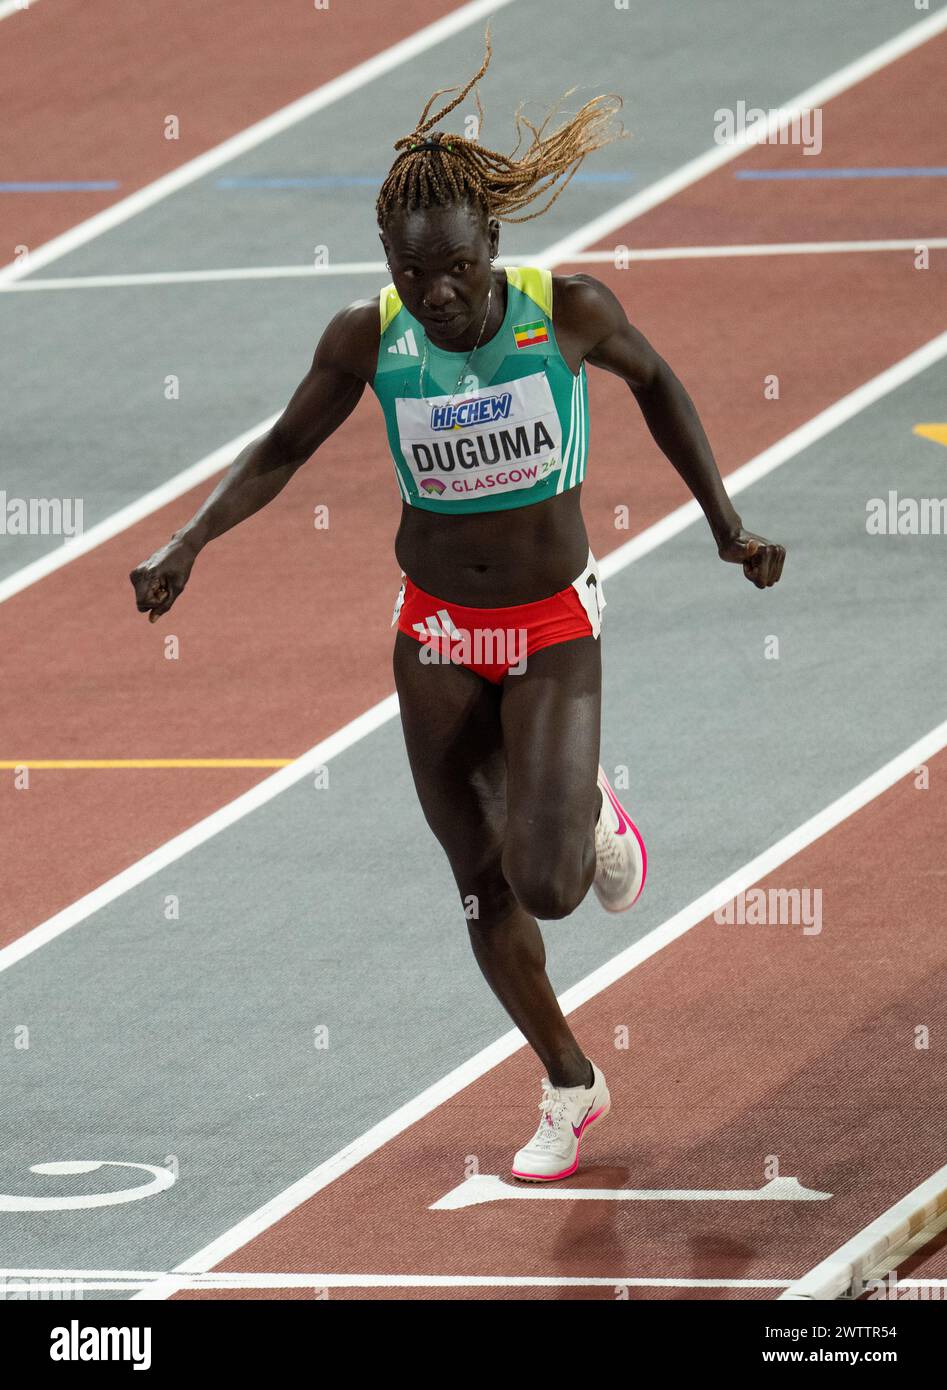 Tsige Duguma aus Äthiopien überquert die Ziellinie und gewinnt das 800-m-Finale der Frauen bei den Leichtathletik-Hallenweltmeisterschaften in der Emirates Arena, Glasgo Stockfoto